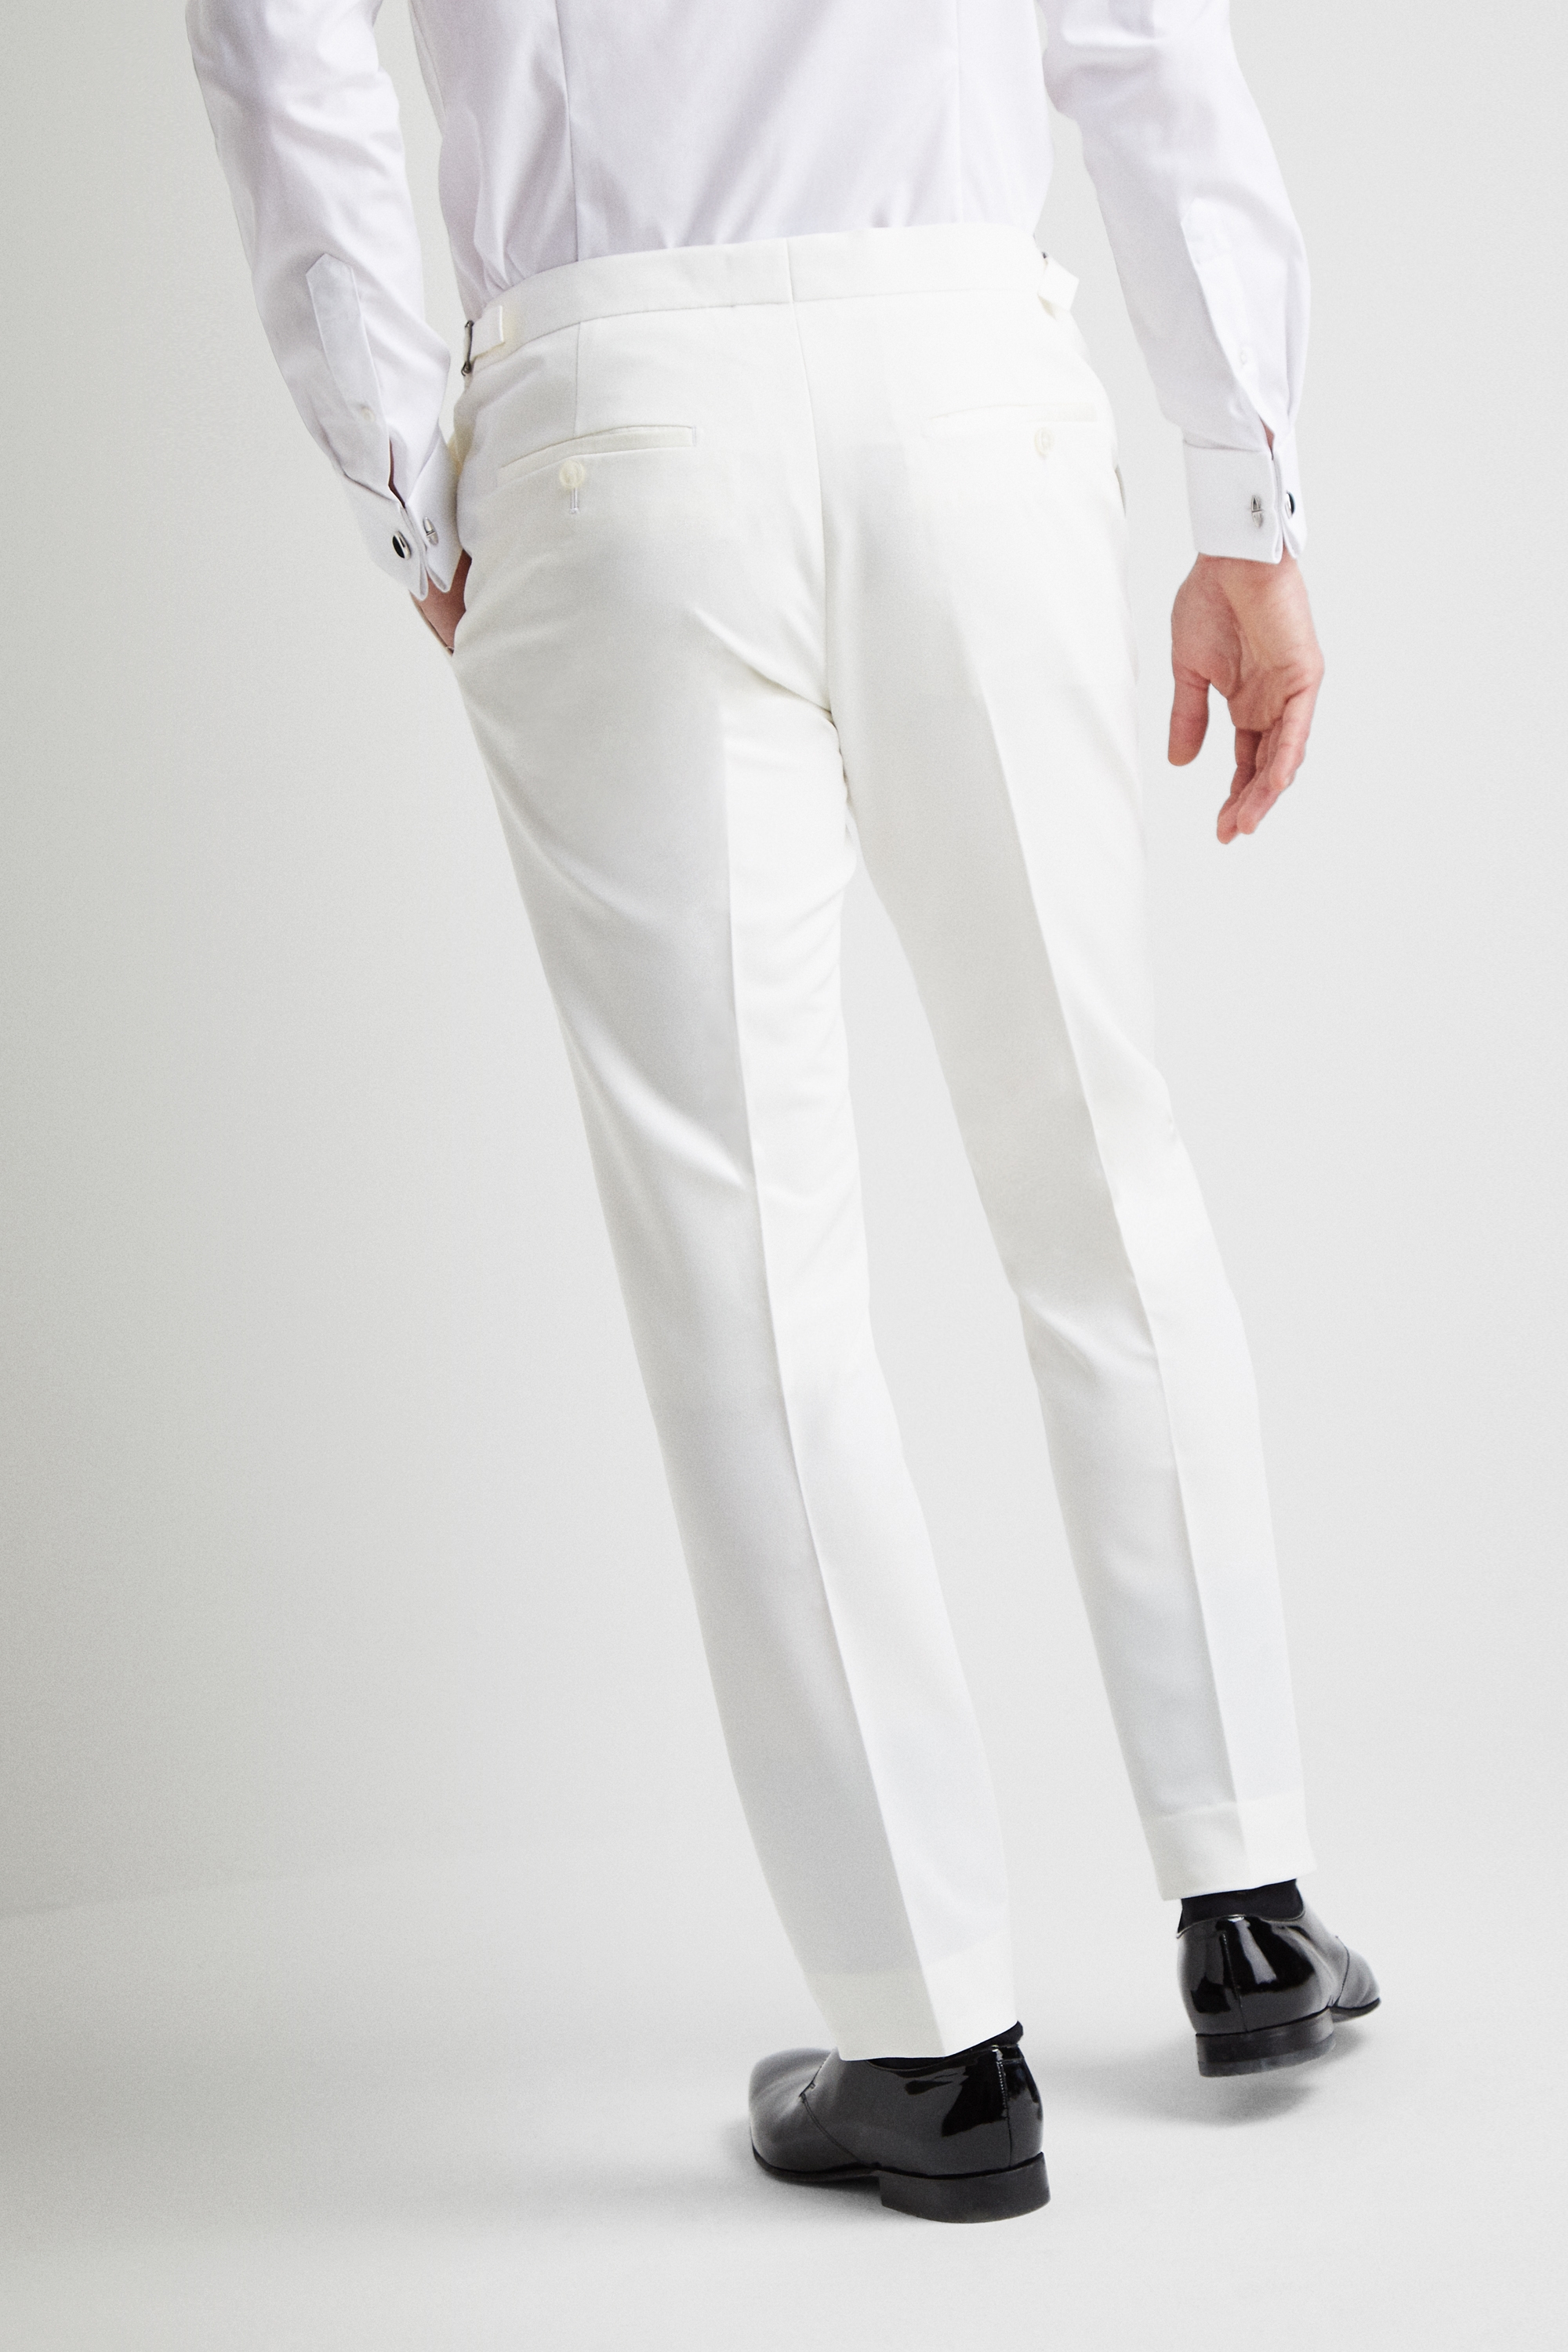 Off White SilkLinen Jacket  Black Linen Tuxedo Trouser for Men  Tailored   Made to Measure  Oscar Hunt